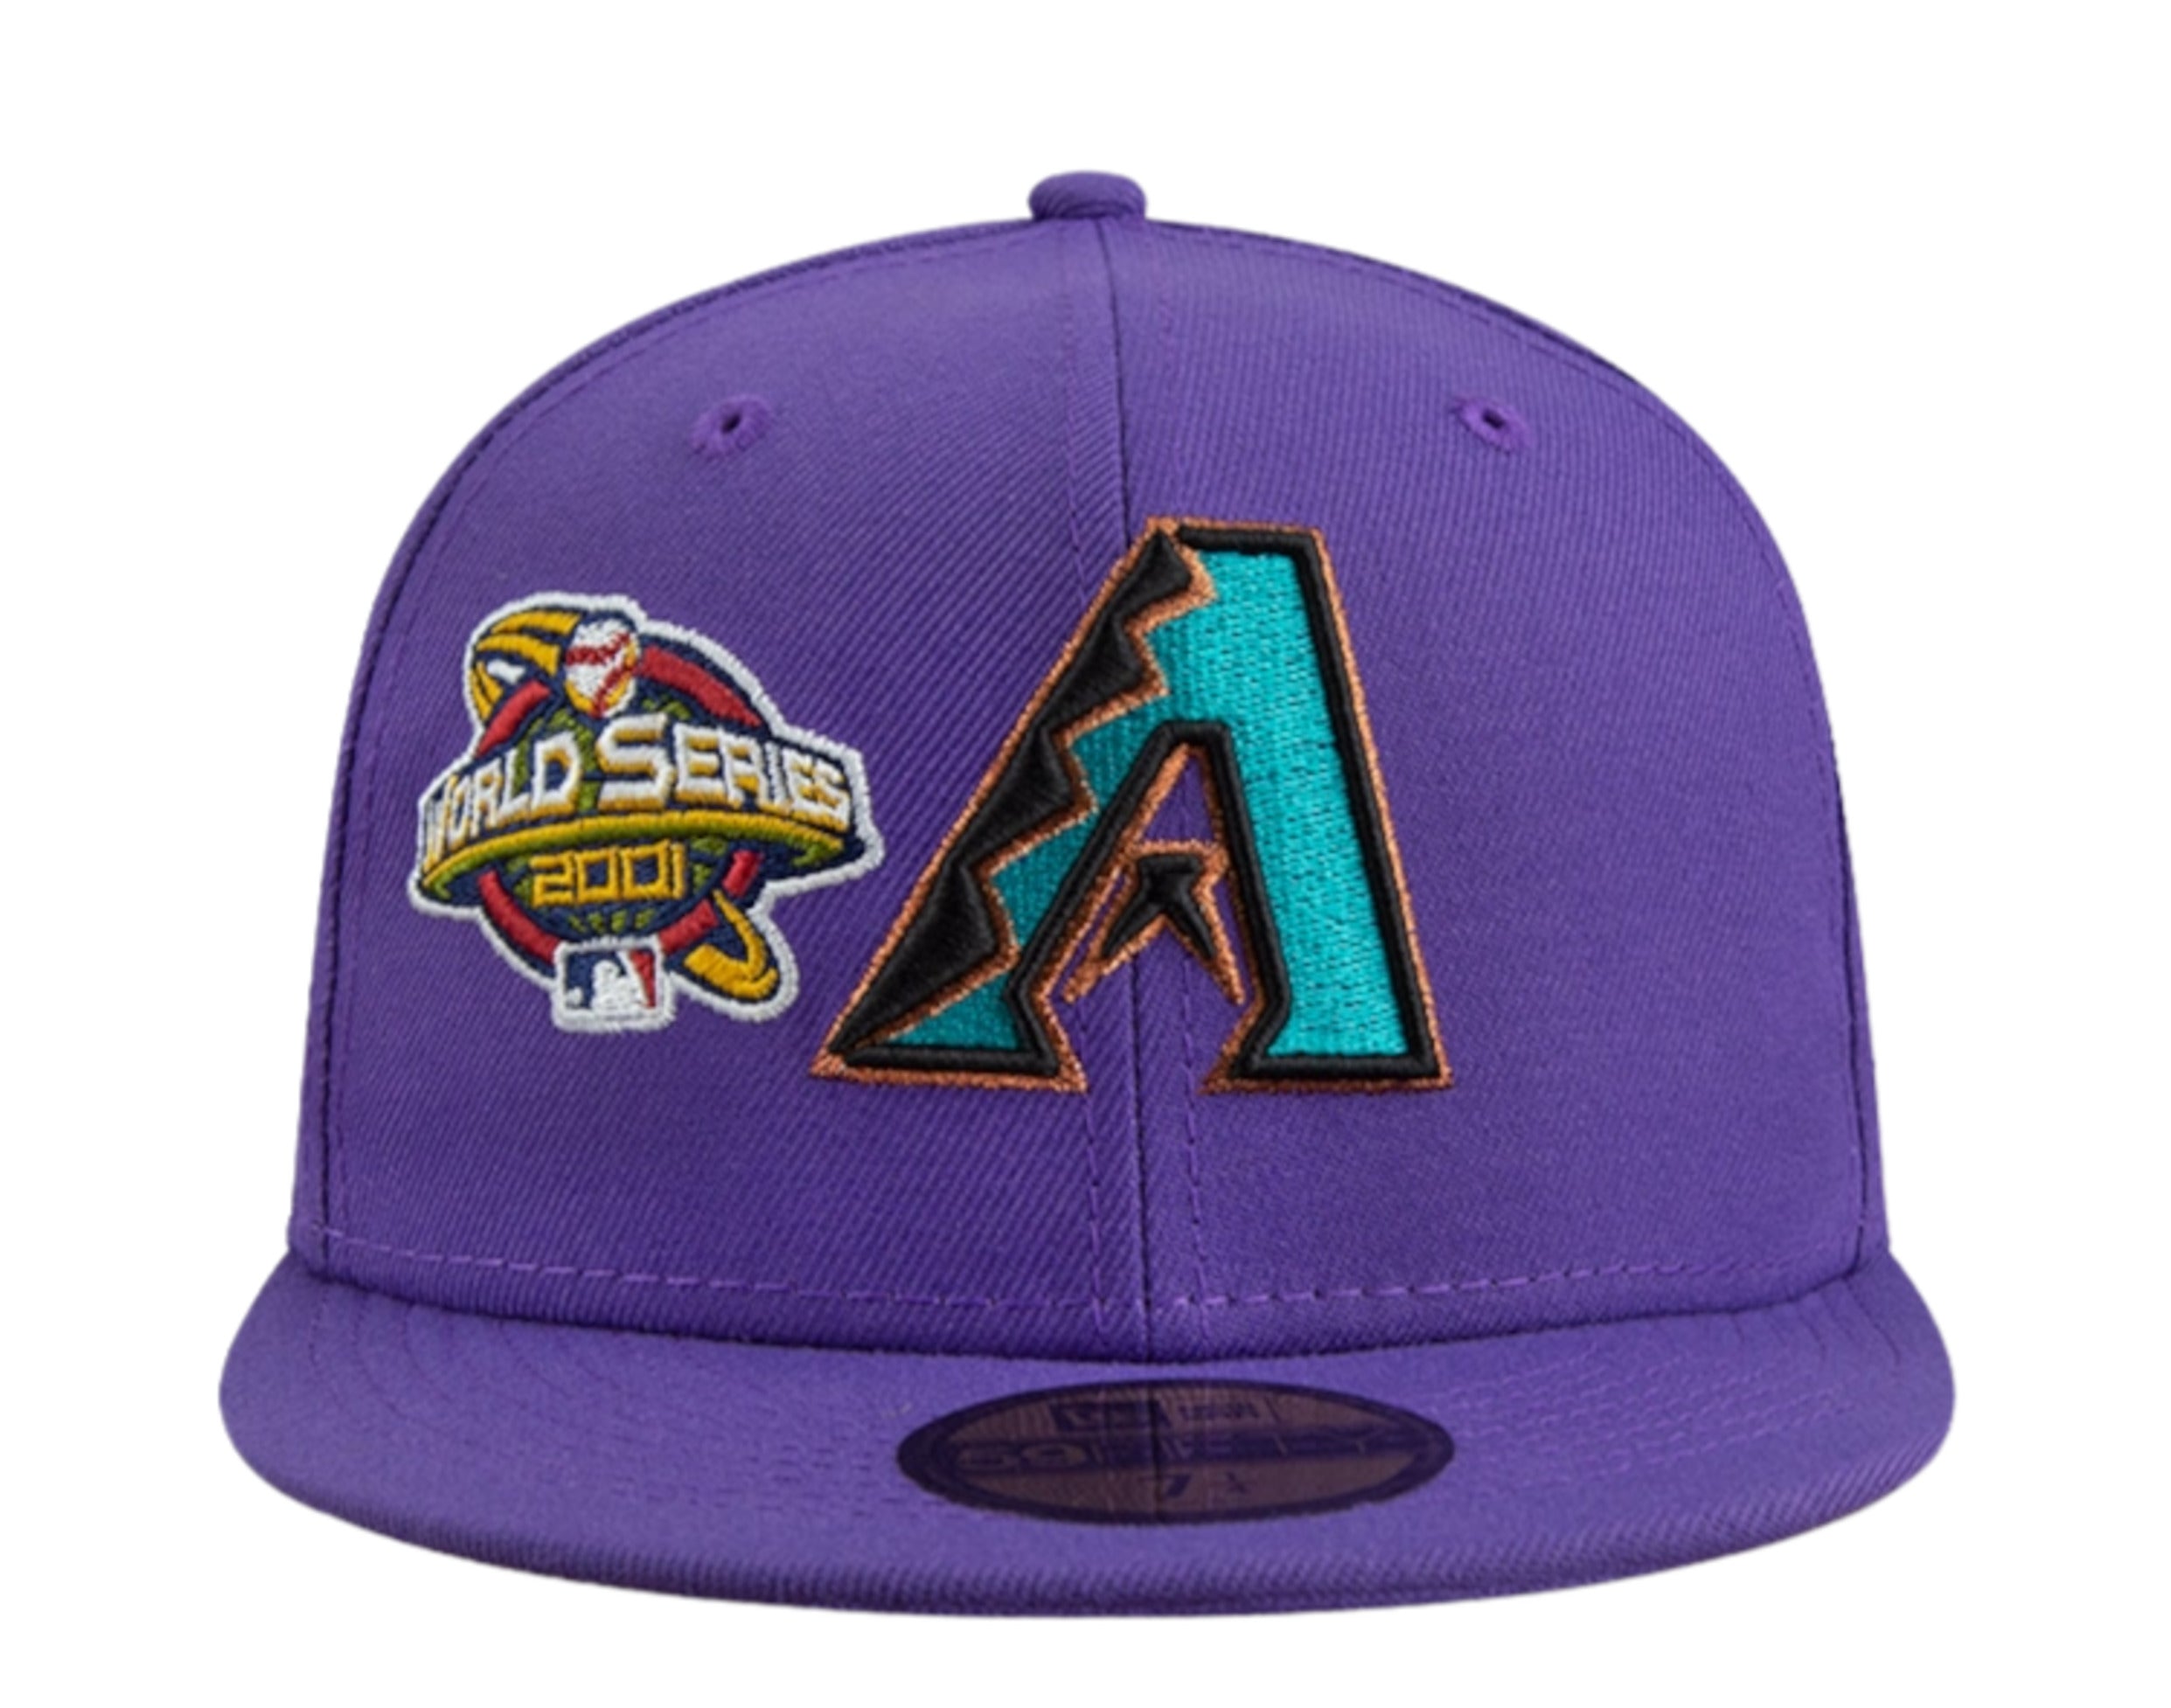 ⚾️ Arizona Diamondbacks Purple Jersey Logo MLB Majestic Size Small NWOT